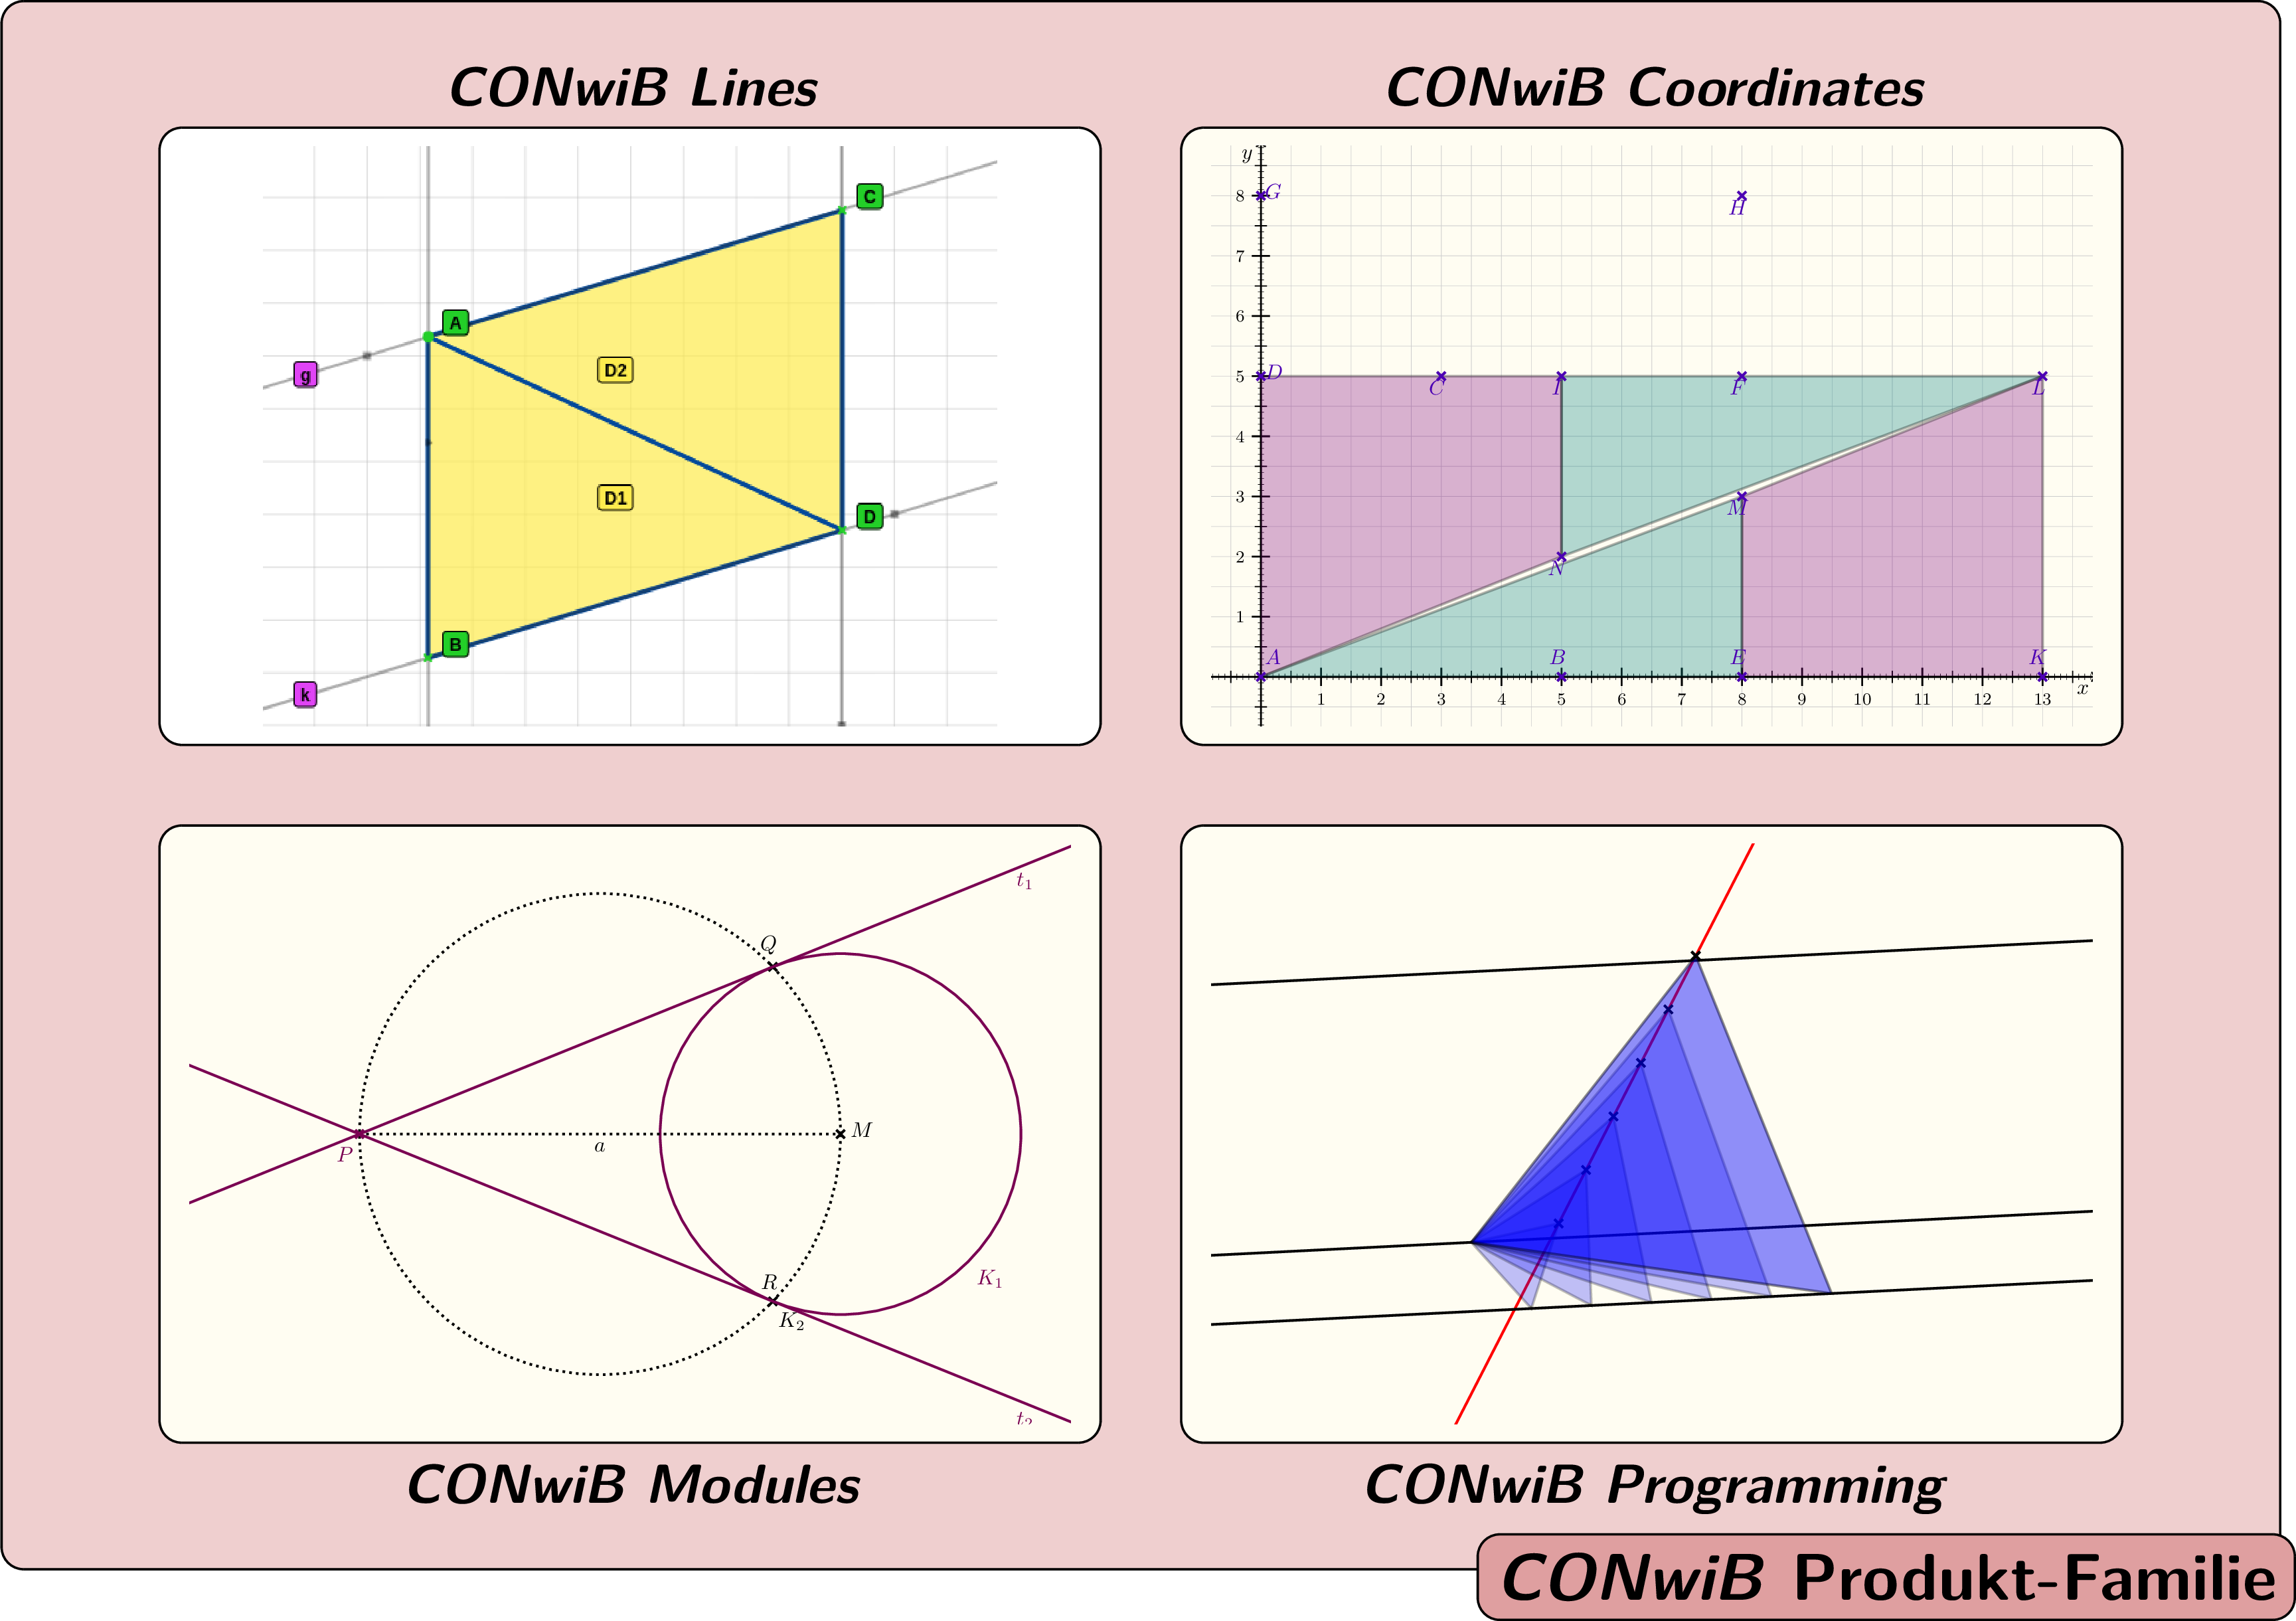 Darstellung von Anwendungsmöglichkeiten - Symmetrieeigenschaften des Parallelogramms in <i>CONwiB Lines</i>, 
    Bewegung ebener Figuren in <i>CONwiB Coordinates</i>, Tangentenkonstruktion mit Hilfe eines
    Thaleskreises in <i>CONwiB Modules</i> sowie Näherungslösung zum Finden eines auf drei Parallelen liegenden gleichseitigen
    Dreiecks in <i>CONwiB Programming</i>